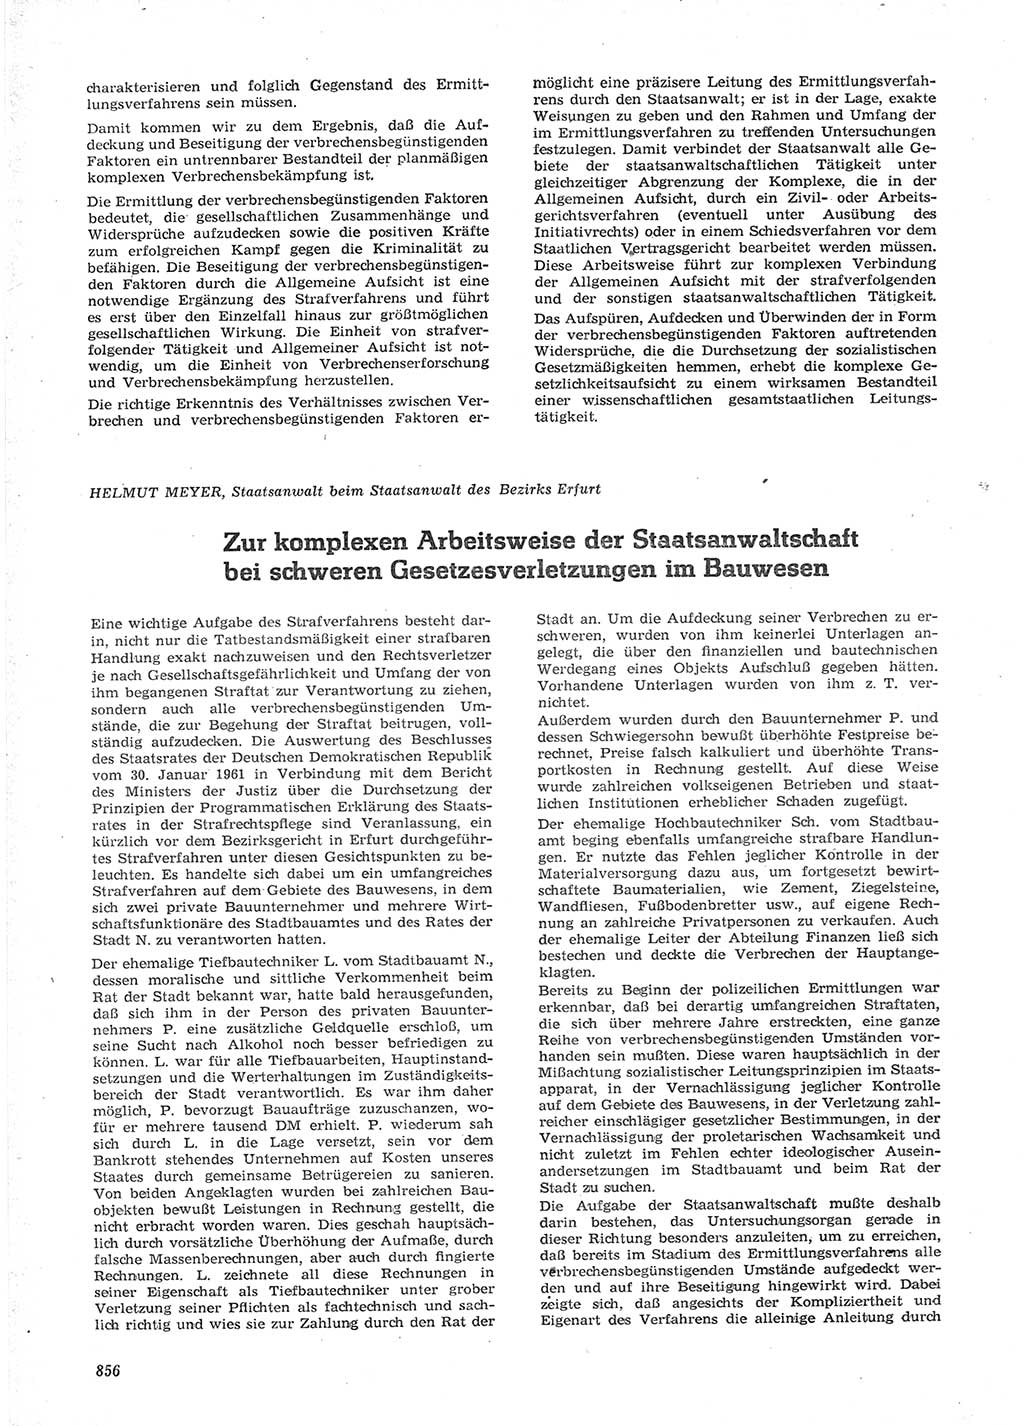 Neue Justiz (NJ), Zeitschrift für Recht und Rechtswissenschaft [Deutsche Demokratische Republik (DDR)], 15. Jahrgang 1961, Seite 856 (NJ DDR 1961, S. 856)